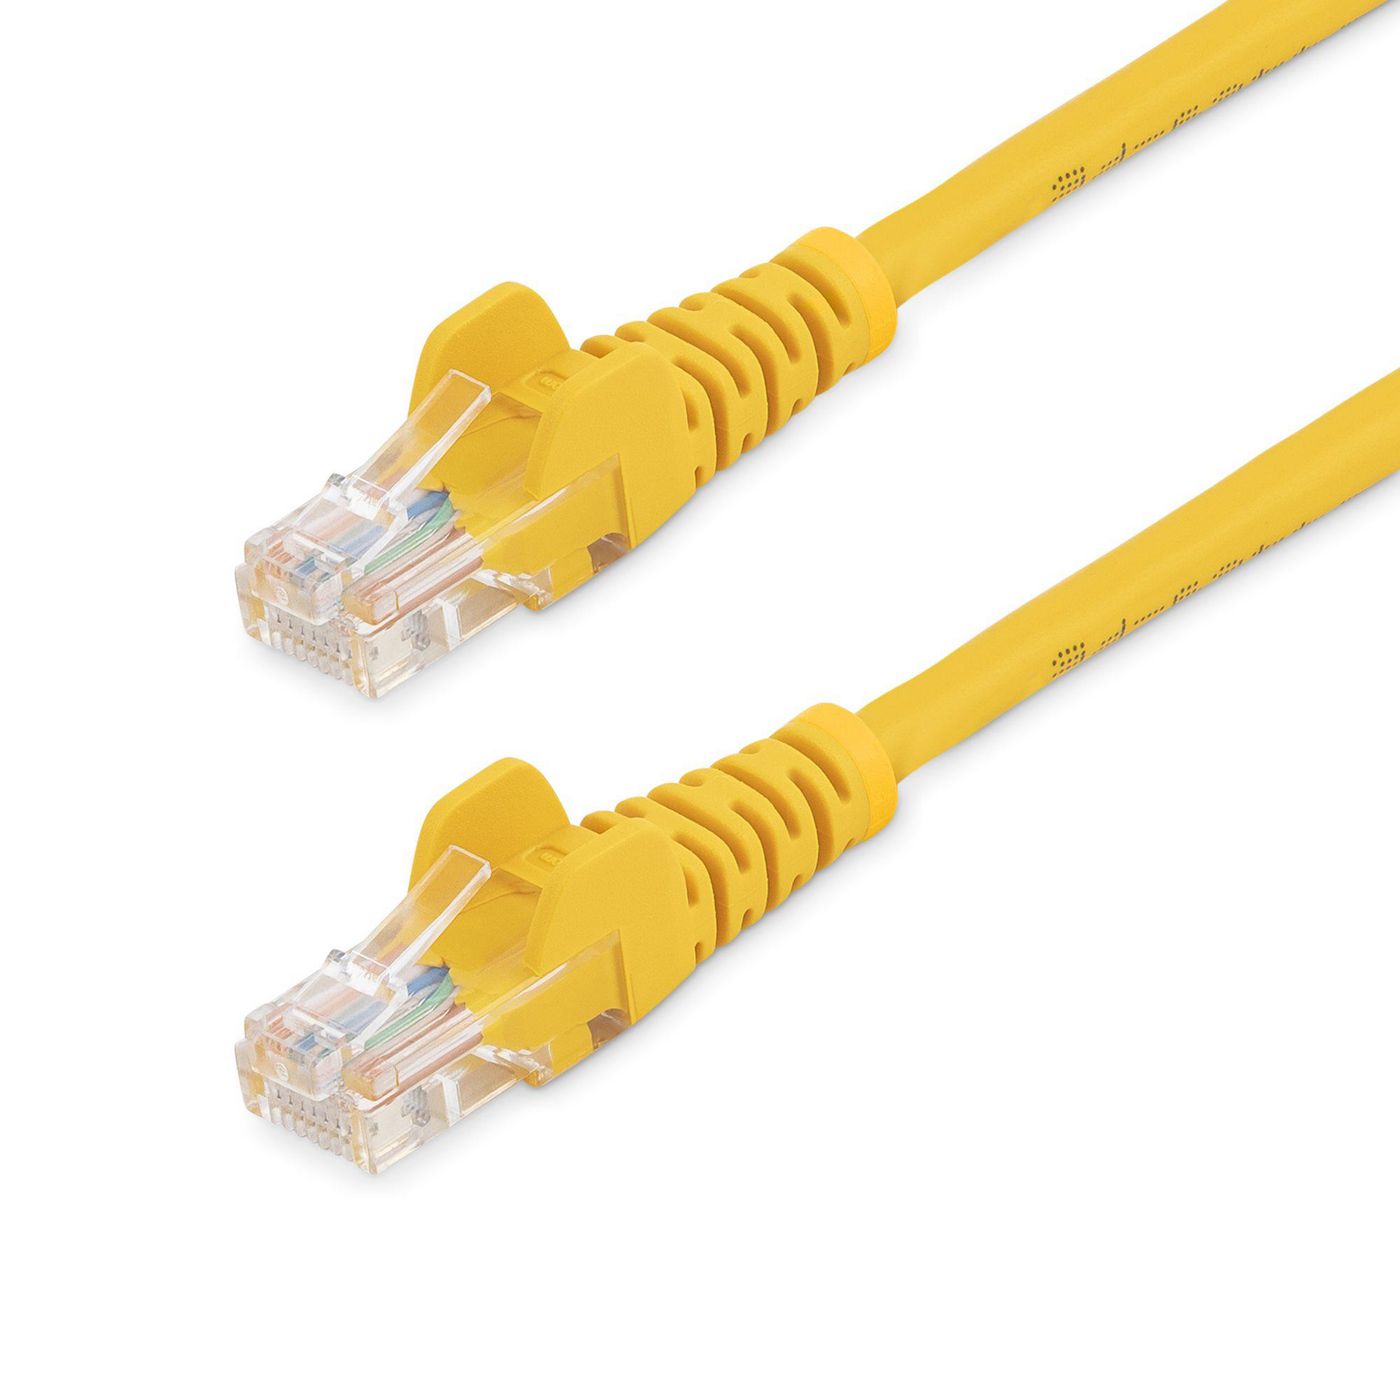 STARTECH.COM 5m Cat5e Ethernet Netzwerkkabel Snagless mit RJ45 - Cat 5e UTP Kabel - Gelb